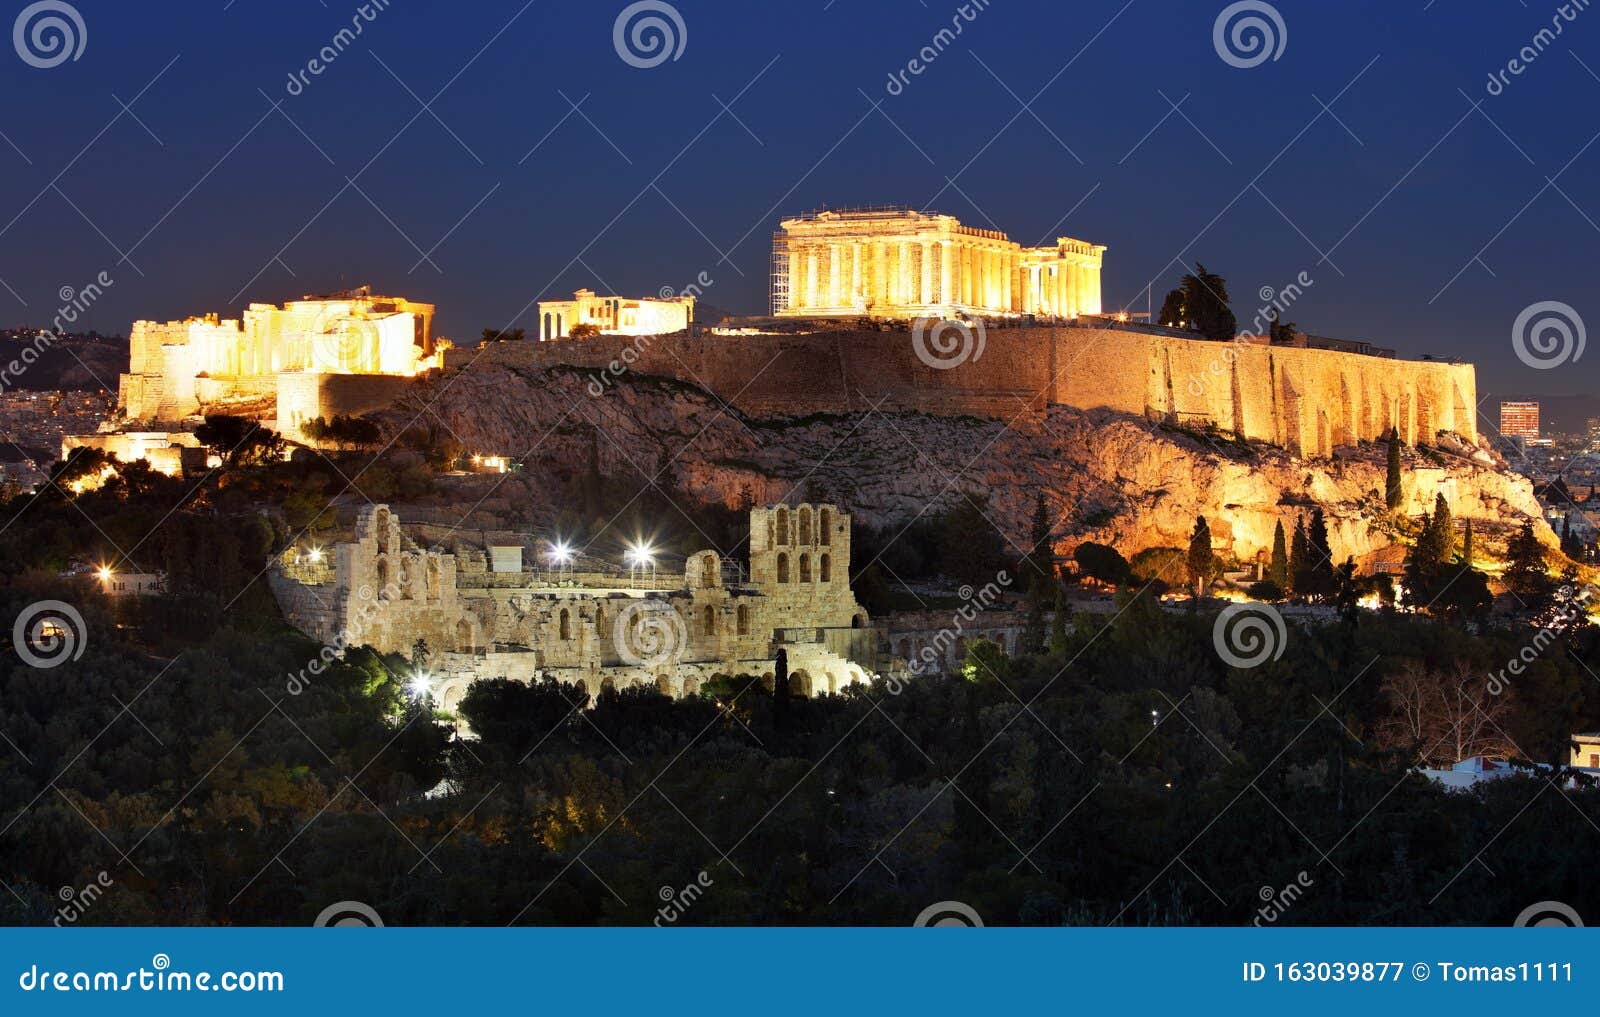 Acropolis Parthenon Of Athens At Dusk Time Greece Stock Image